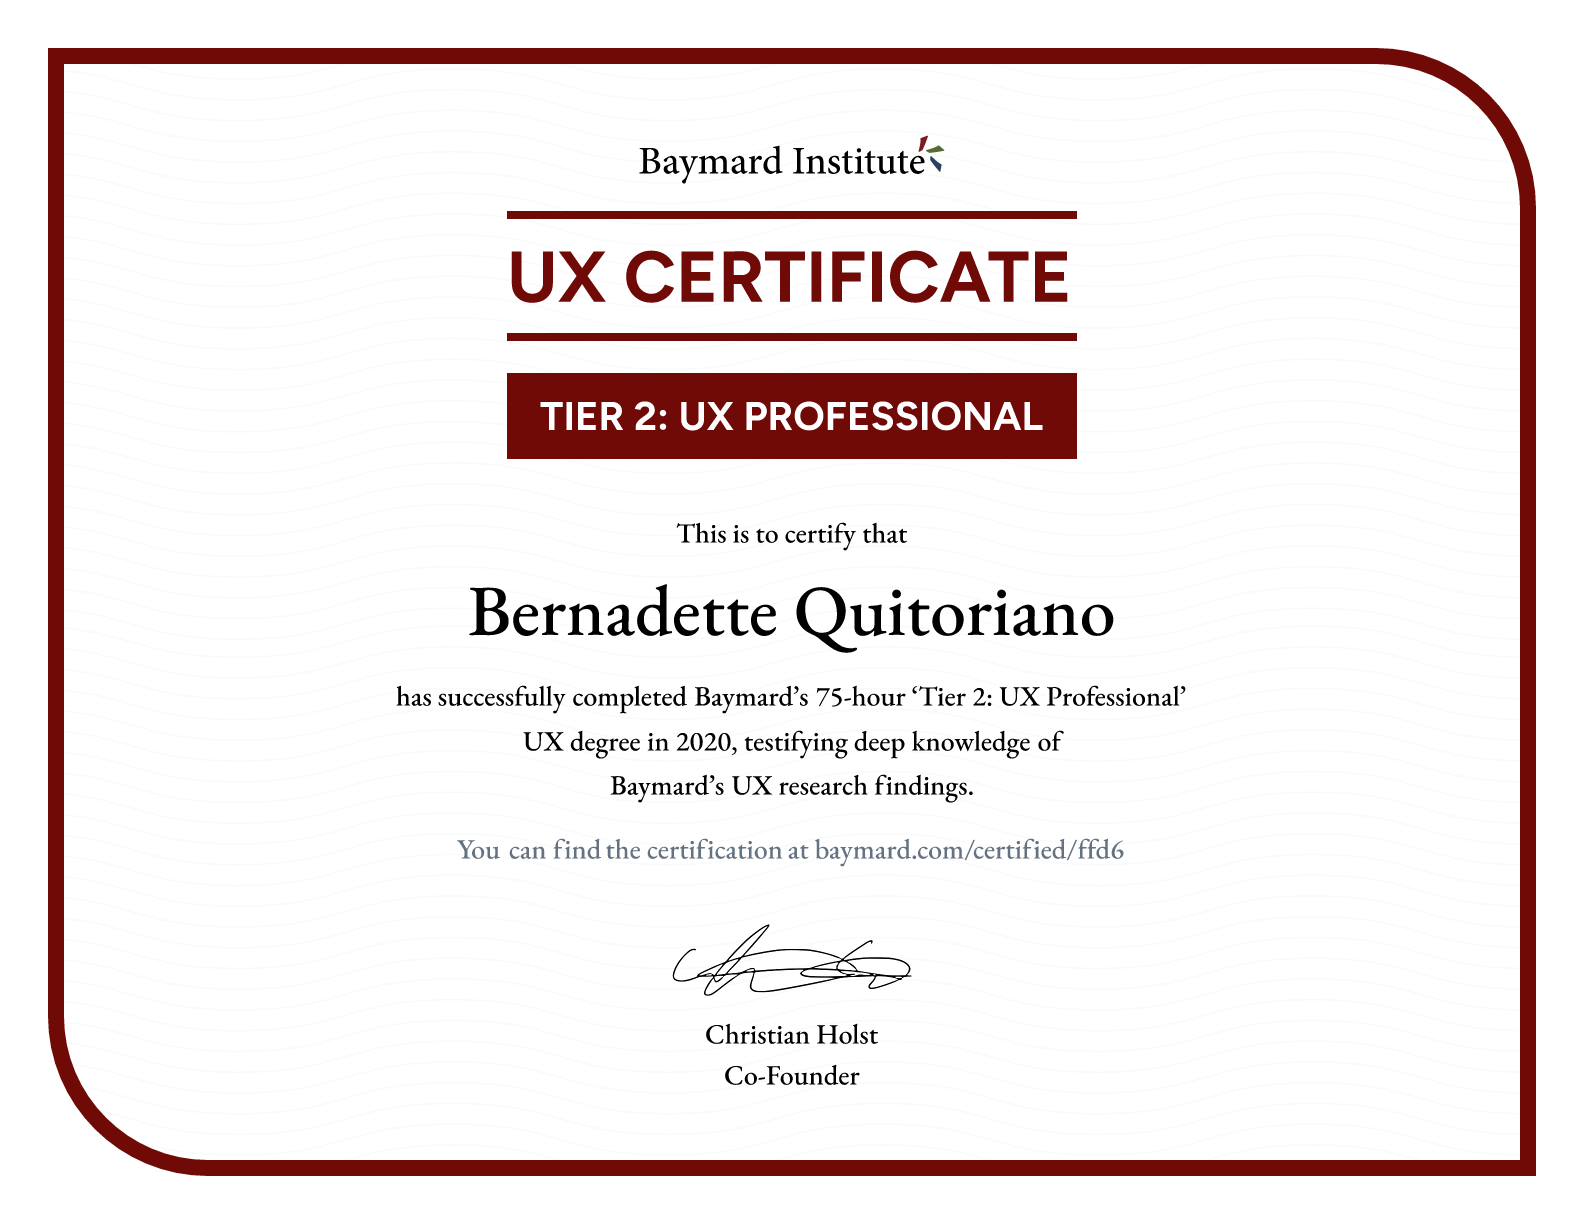 Bernadette Quitoriano’s certificate